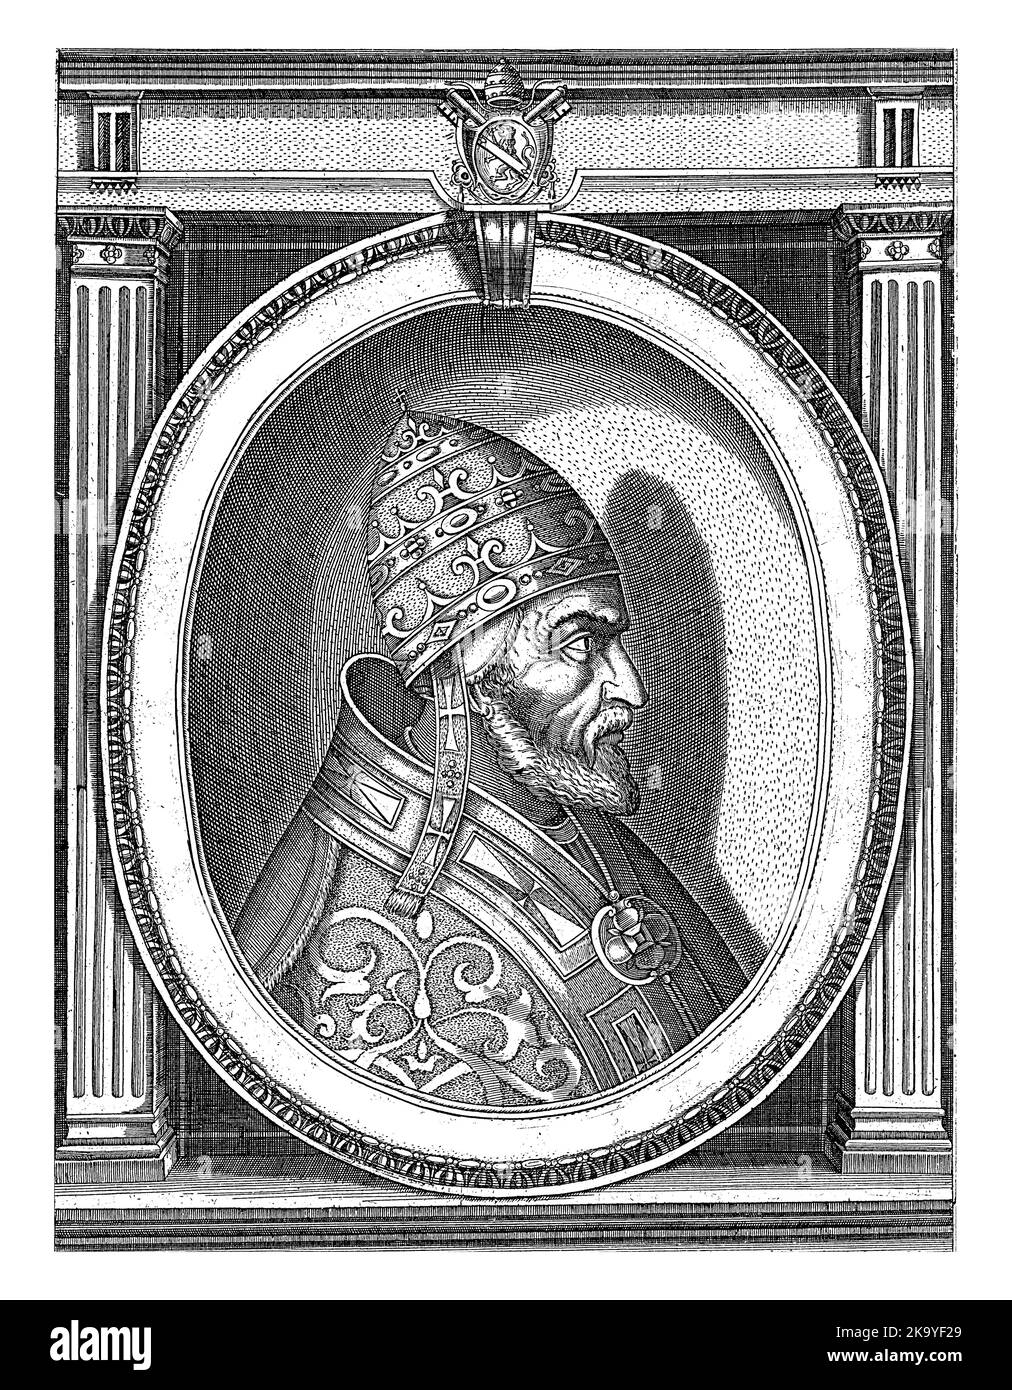 Portrait du Pape Sixtus V habillé dans les robes papale, tête ornée du tiara papal. Buste vers la droite dans un cadre ovale avec le lettrage de bord. Banque D'Images